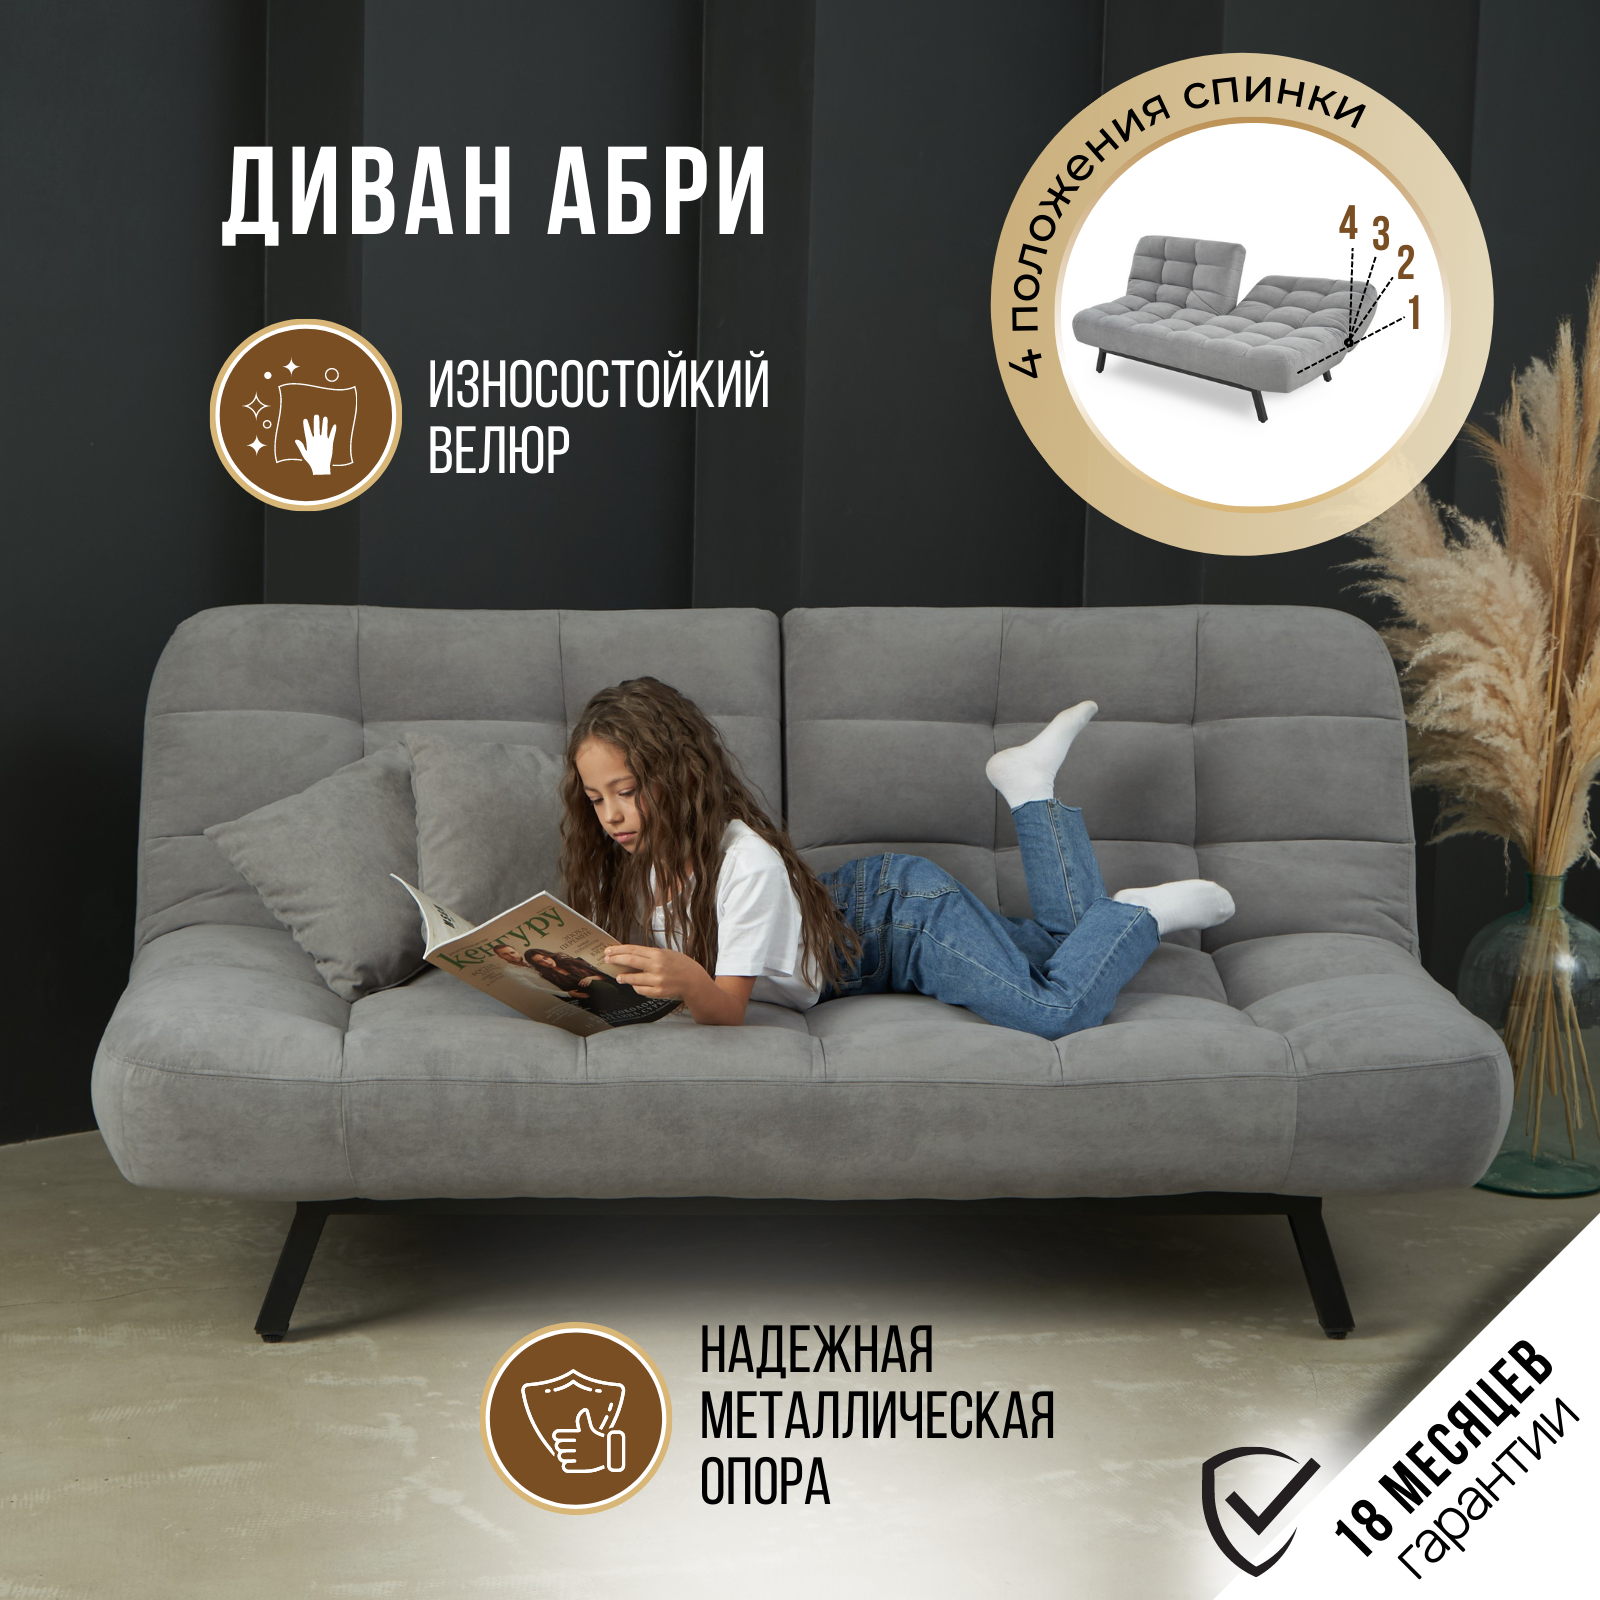 Чем обусловлена популярность раскладных диванов в России?